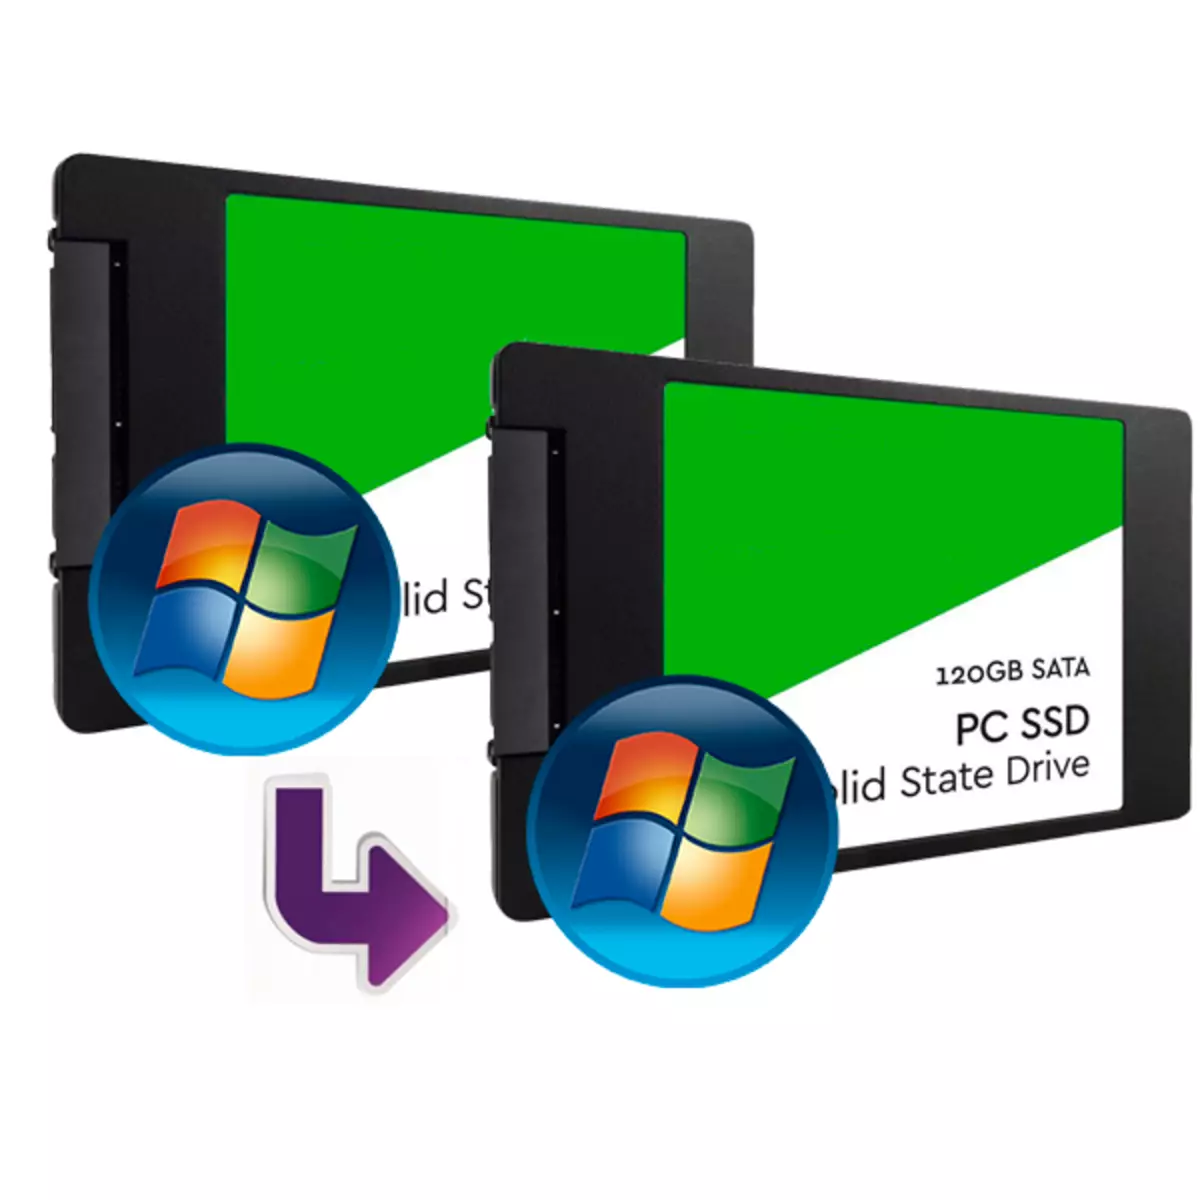 Rendszer átvitele SSD-vel az SSD lemezen